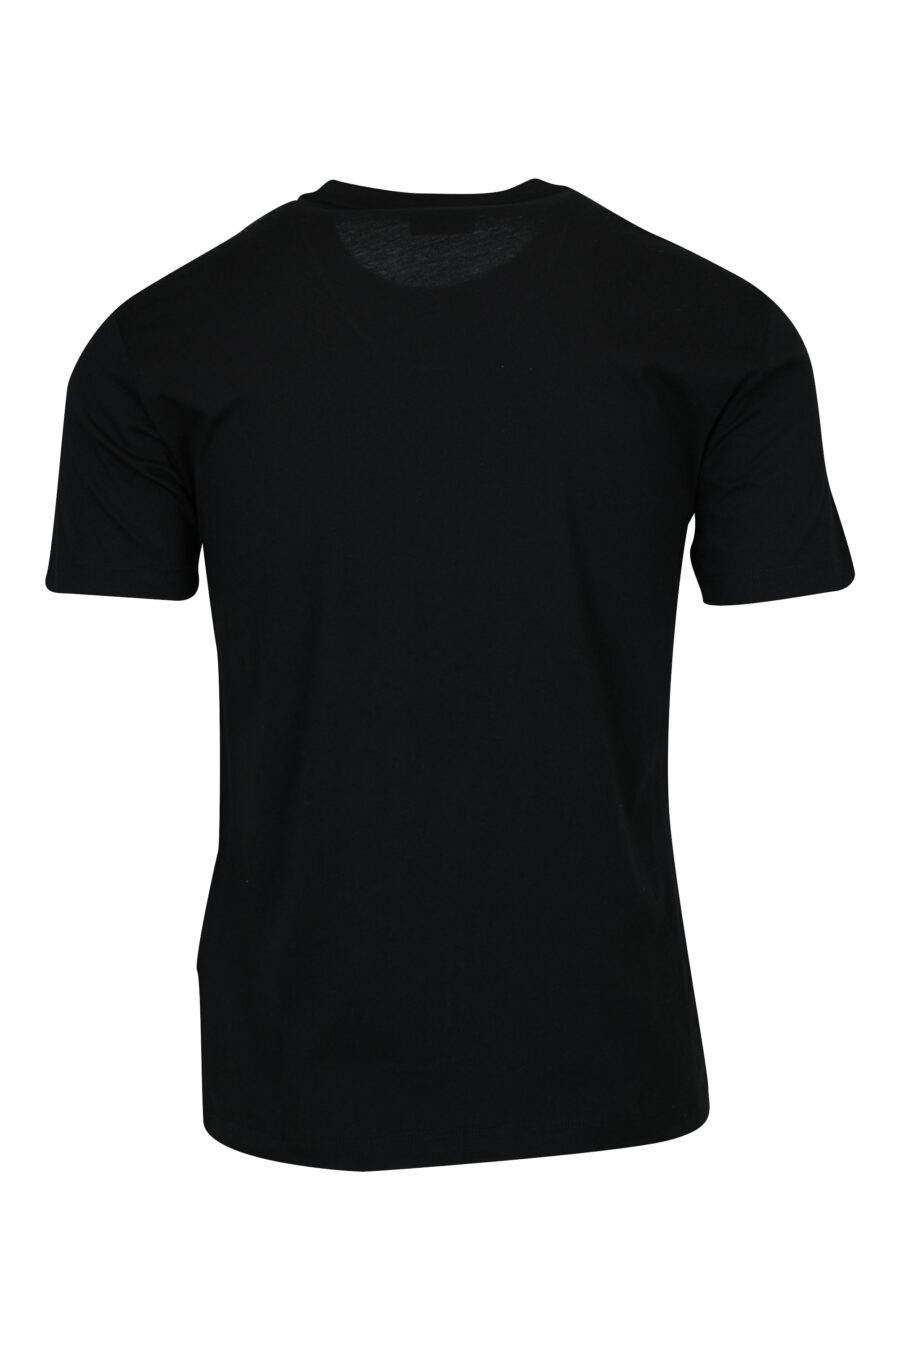 Camiseta negra con maxilogo "lux identity" en degradé - 8058947508099 1